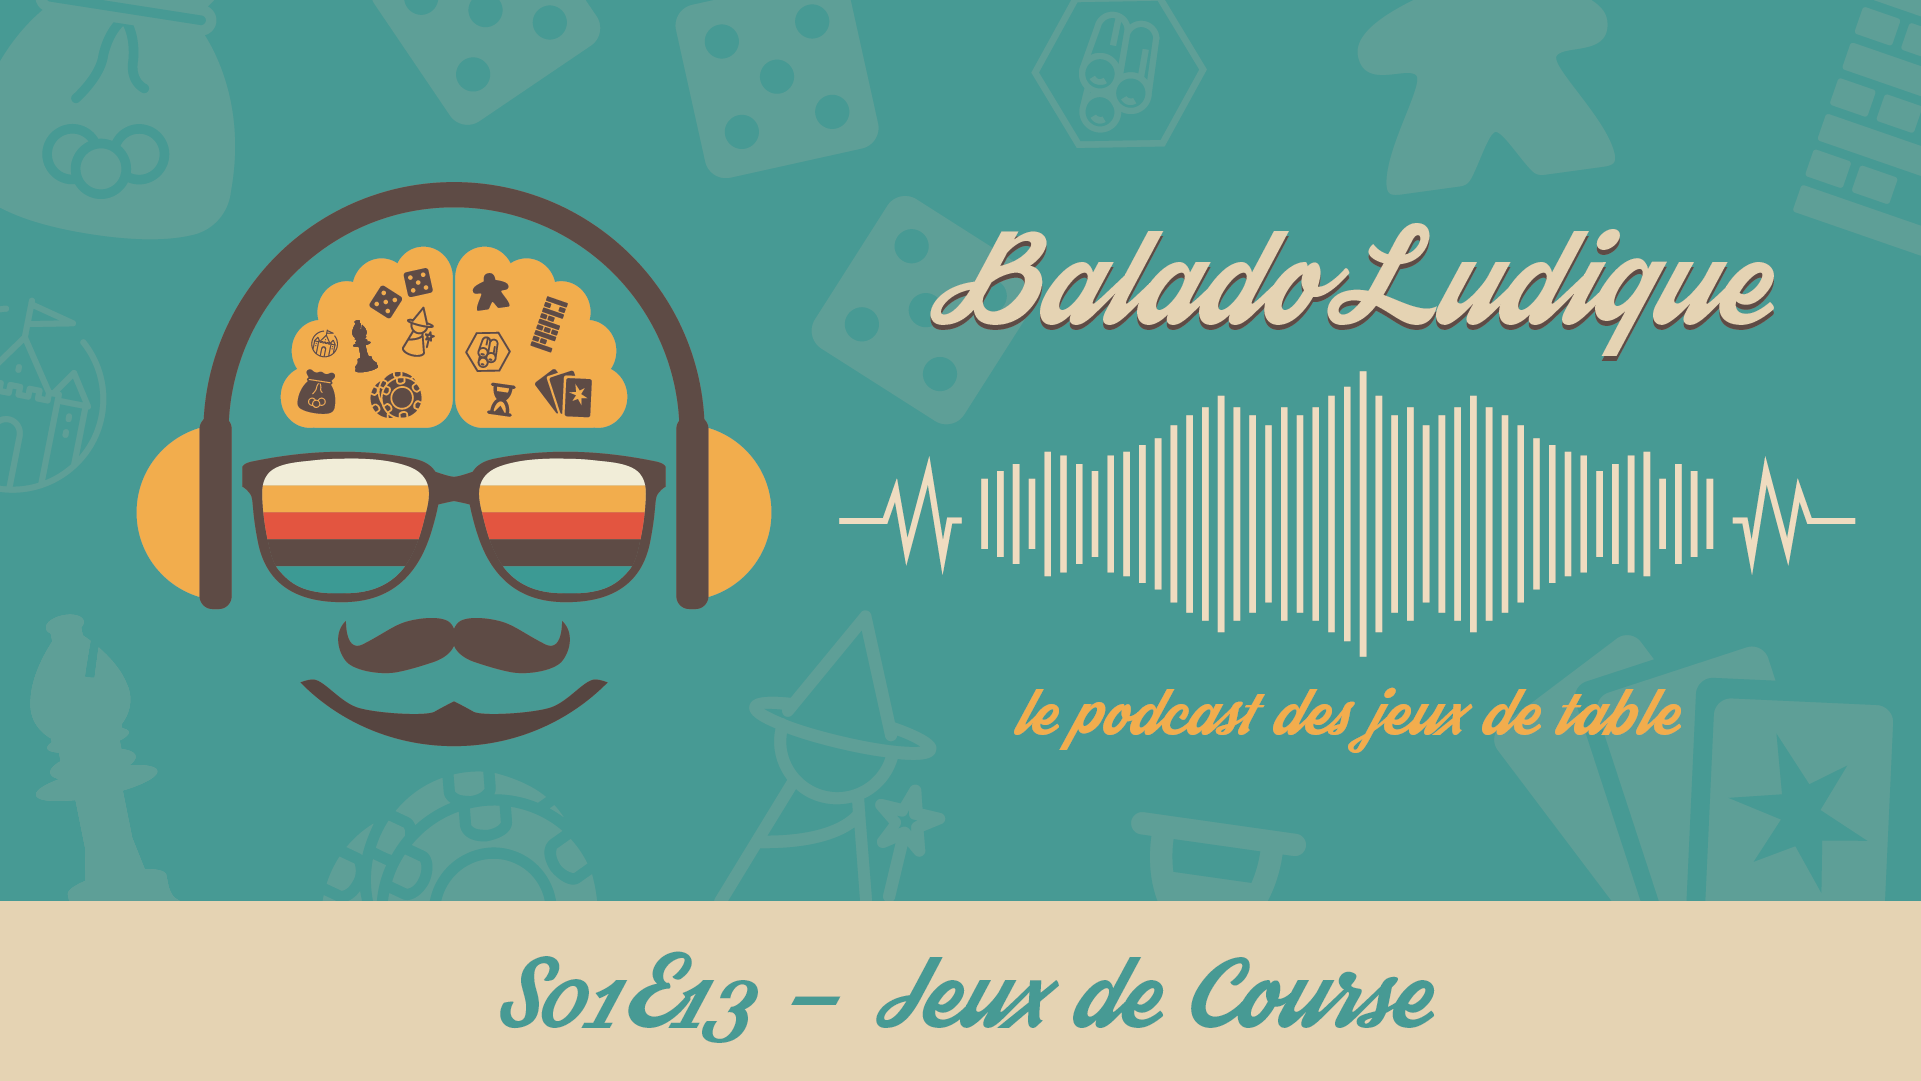 Jeux de Courses - BaladoLudique - s01e13